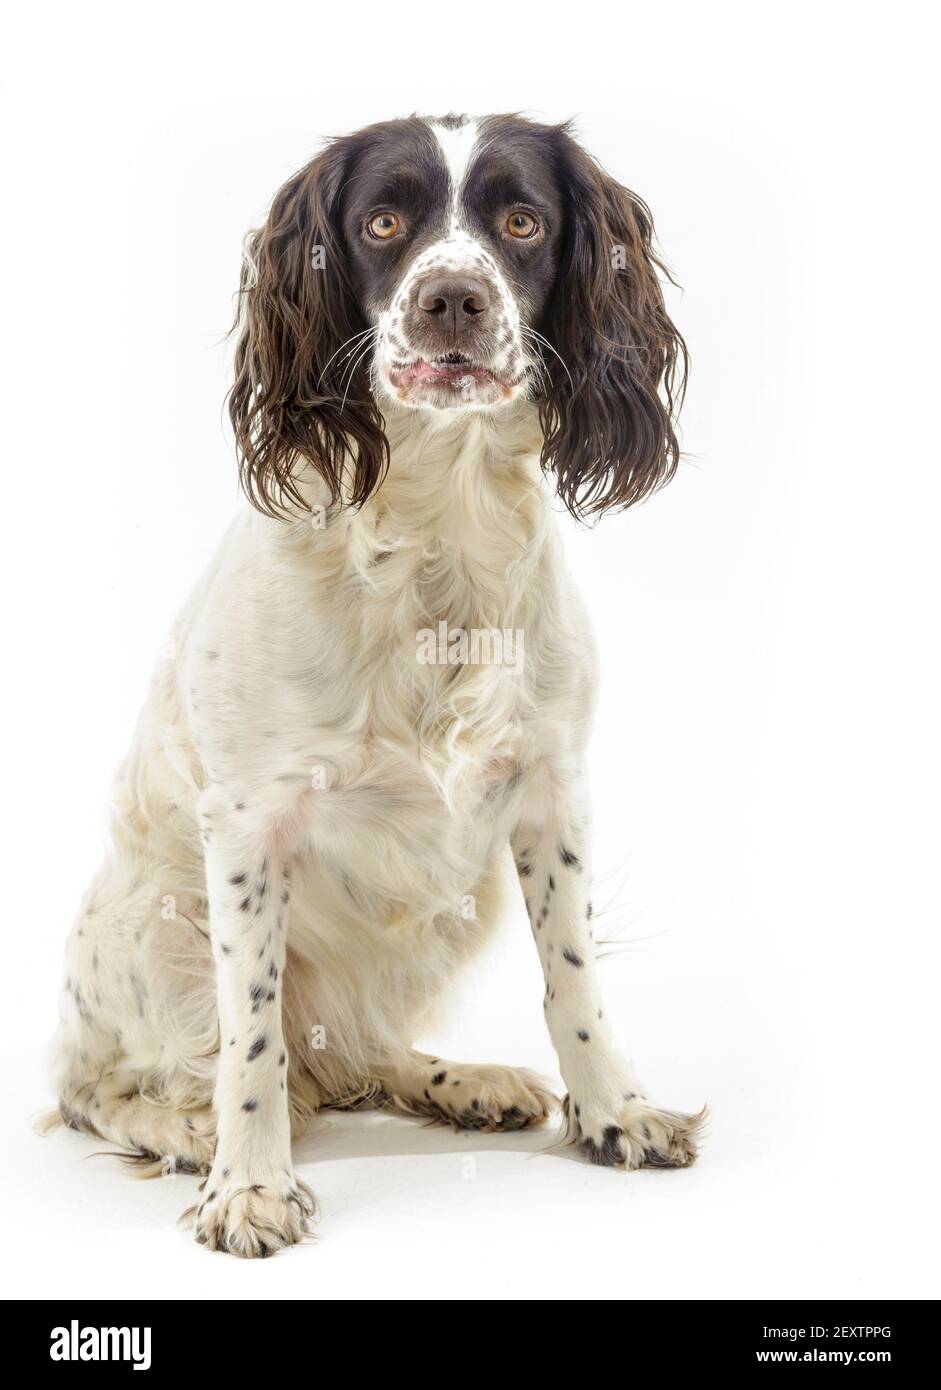 Ein englischer Springer Spaniel, ein arbeitend Schützenhund Rasse, vor einem weißen Hintergrund fotografiert in einem Studio Stockfoto